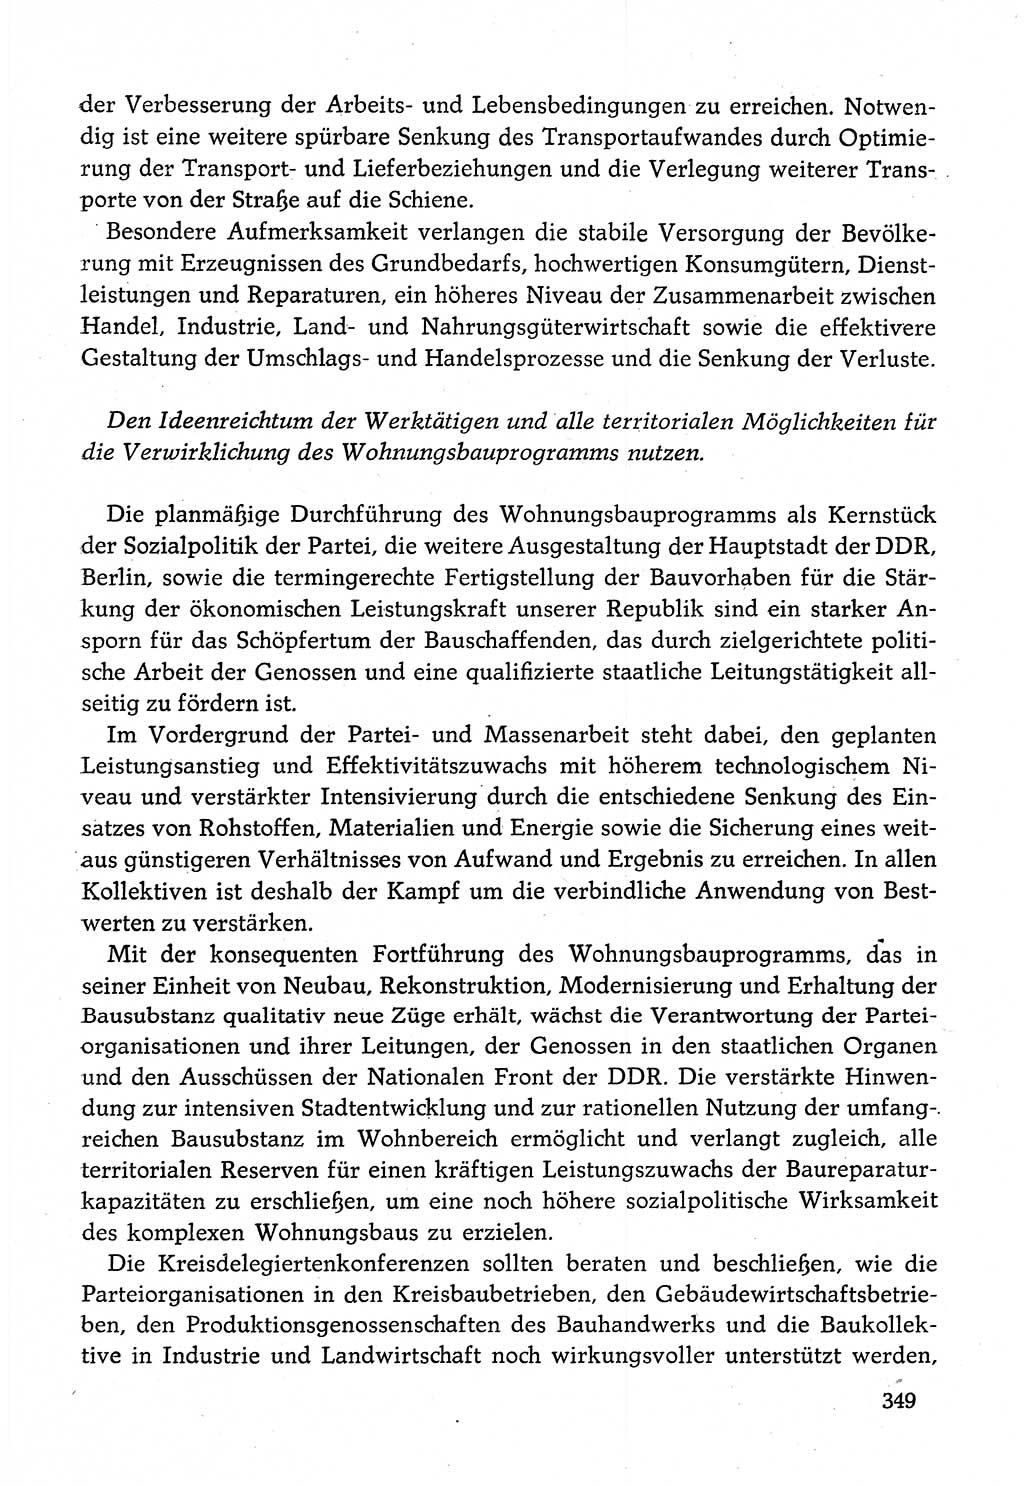 Dokumente der Sozialistischen Einheitspartei Deutschlands (SED) [Deutsche Demokratische Republik (DDR)] 1982-1983, Seite 349 (Dok. SED DDR 1982-1983, S. 349)